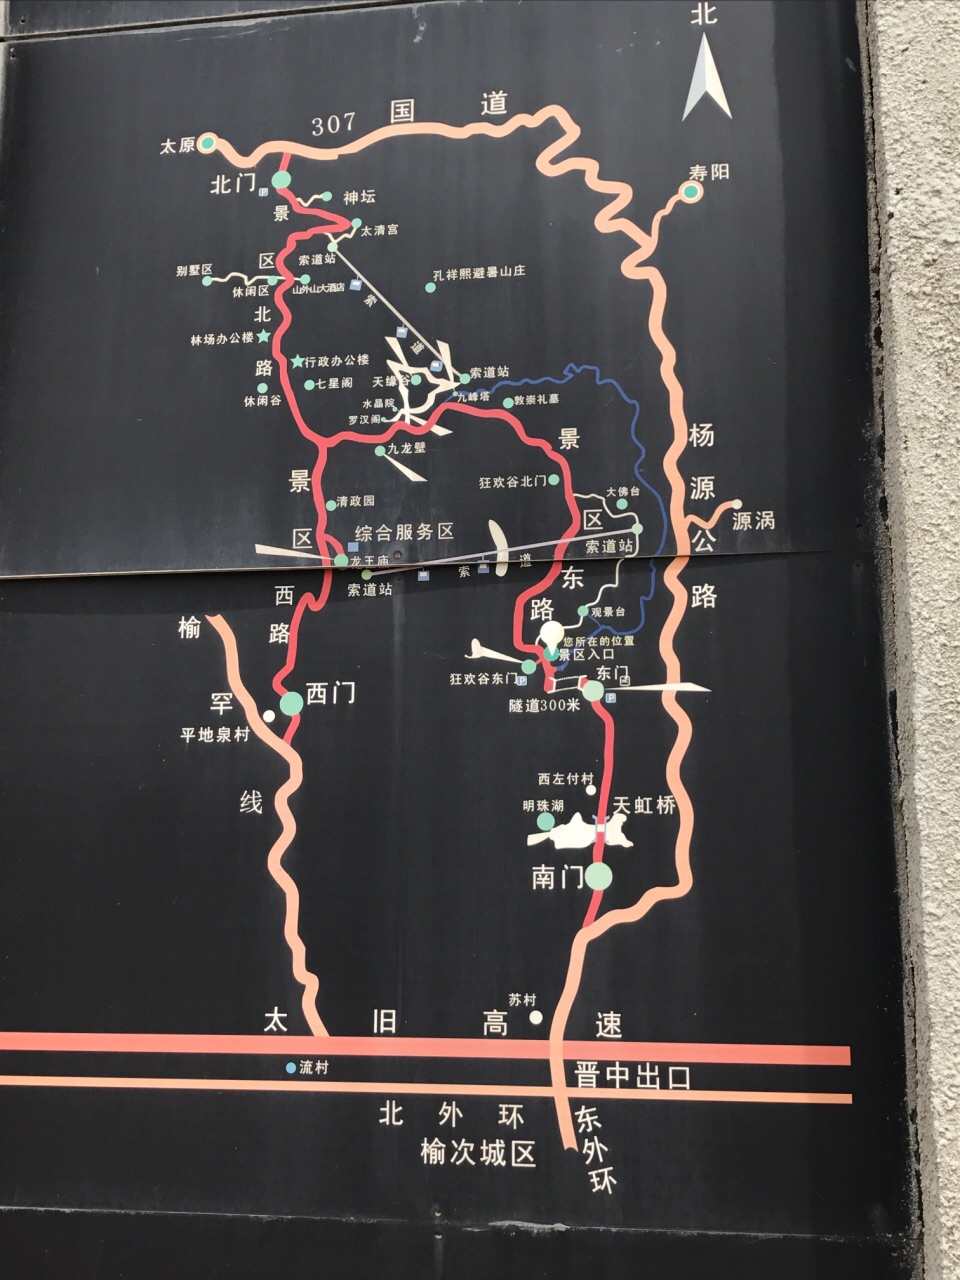 韩国乌山地图图片